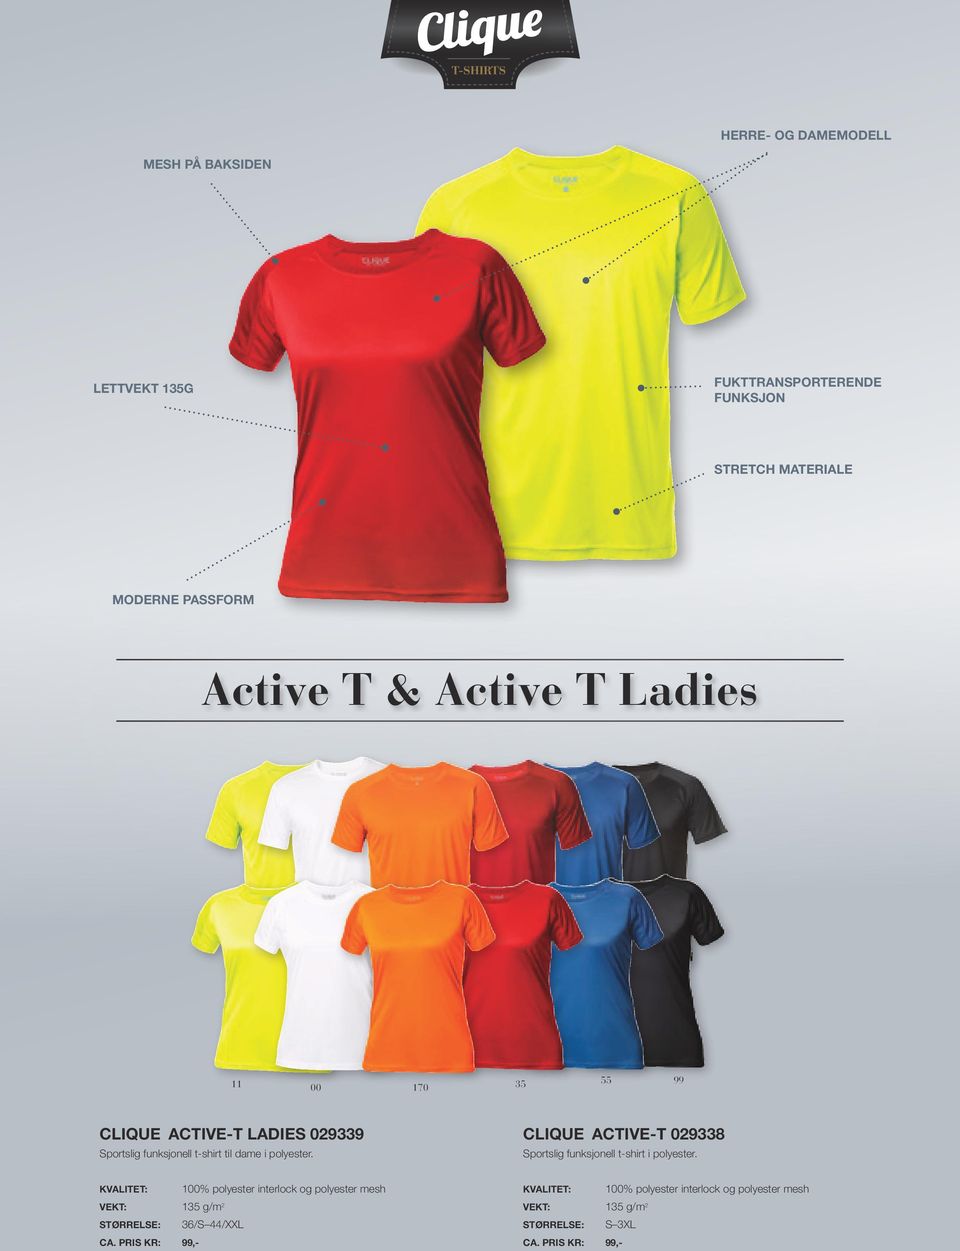 CLIQUE ACTIVE-T 029338 Sportslig funksjonell t-shirt i polyester.